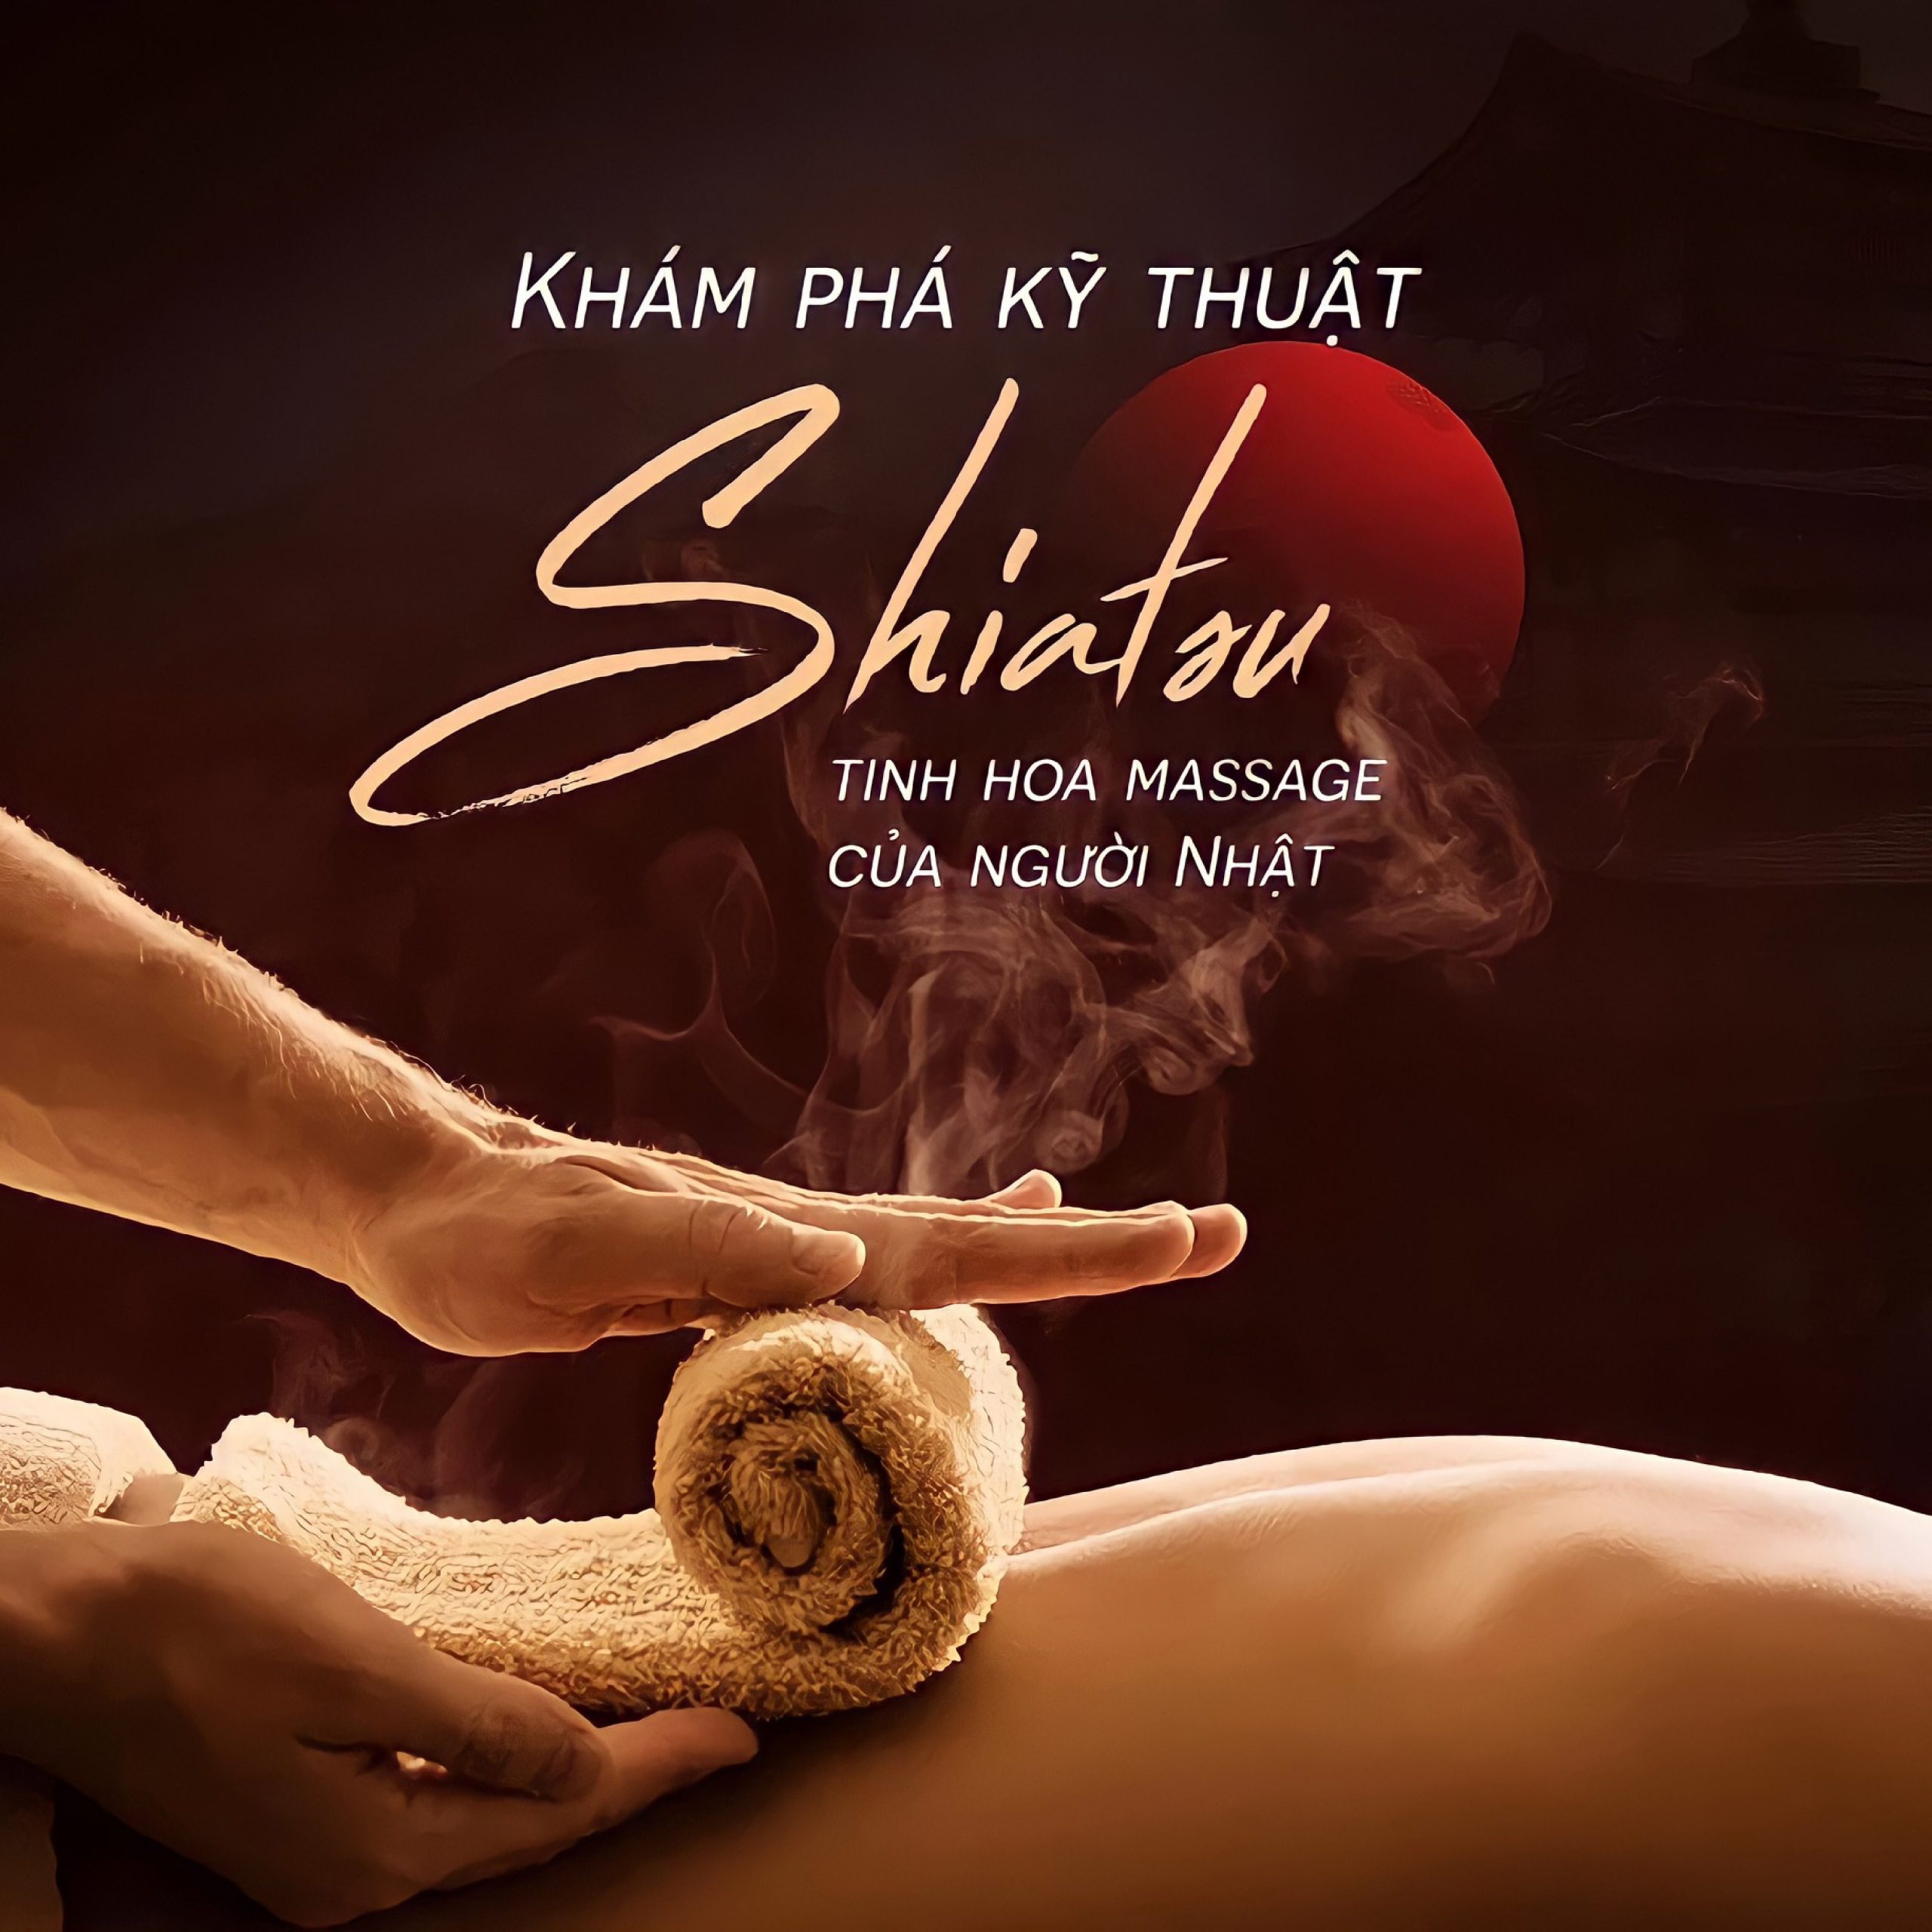 Ghế massage nội địa Nhật tích hợp công nghệ massage Shiatsu cổ truyền